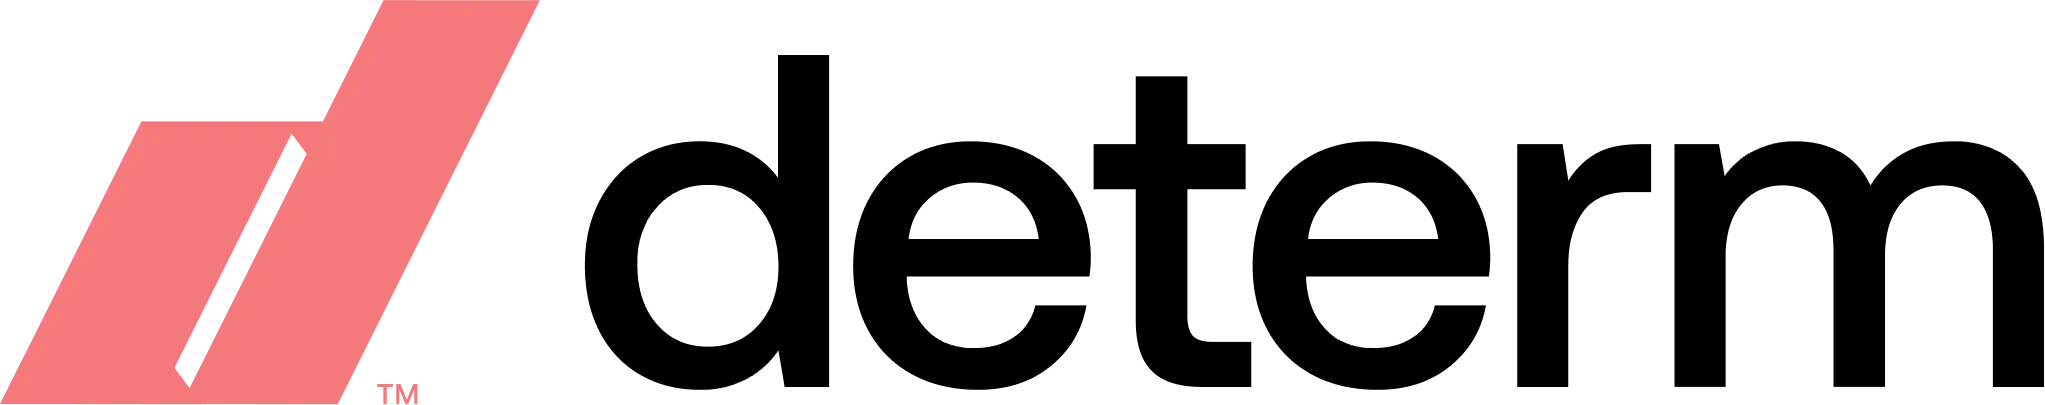 Determ.com logo